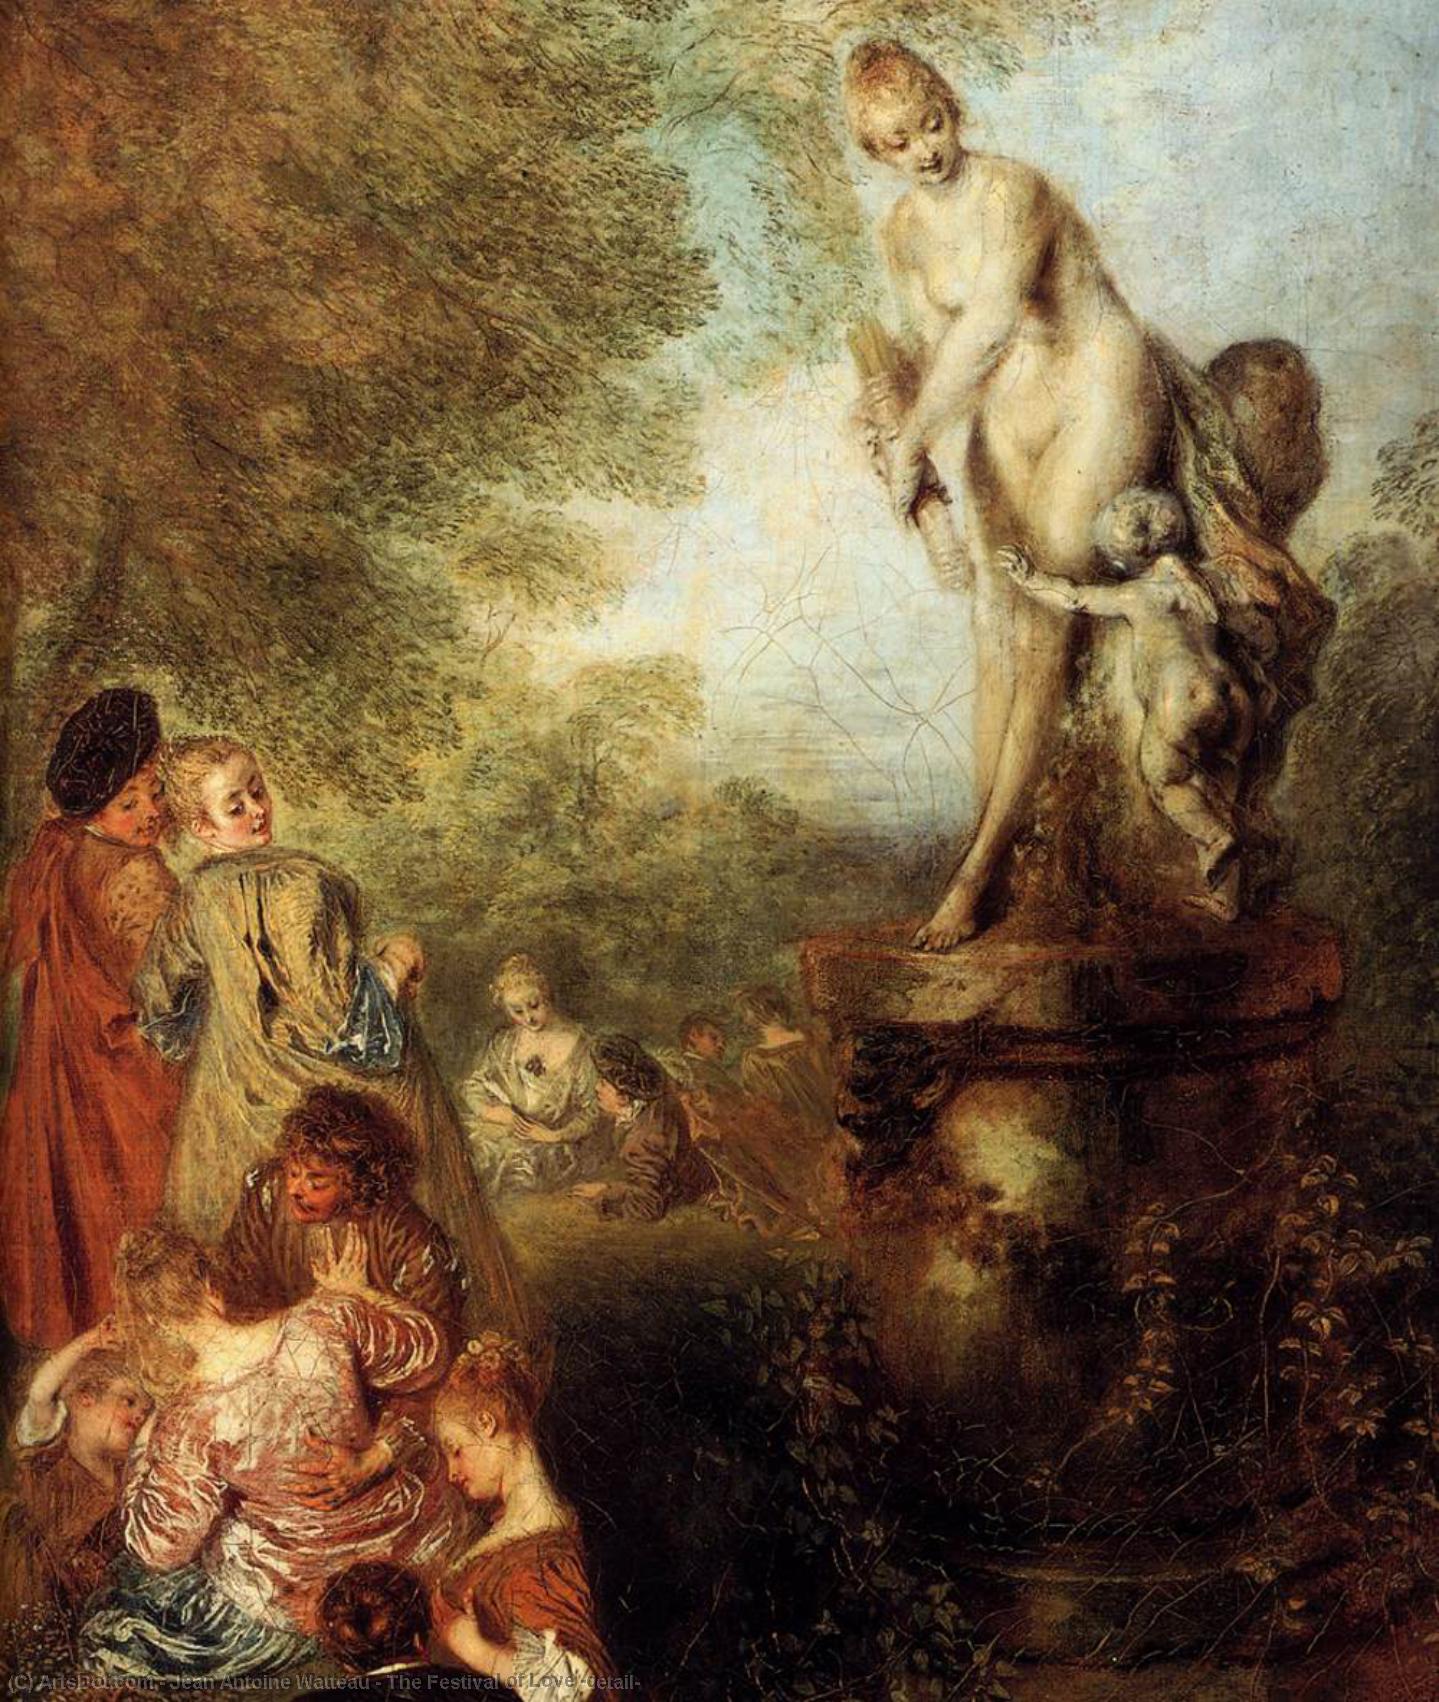 WikiOO.org - Encyclopedia of Fine Arts - Malba, Artwork Jean Antoine Watteau - The Festival of Love (detail)